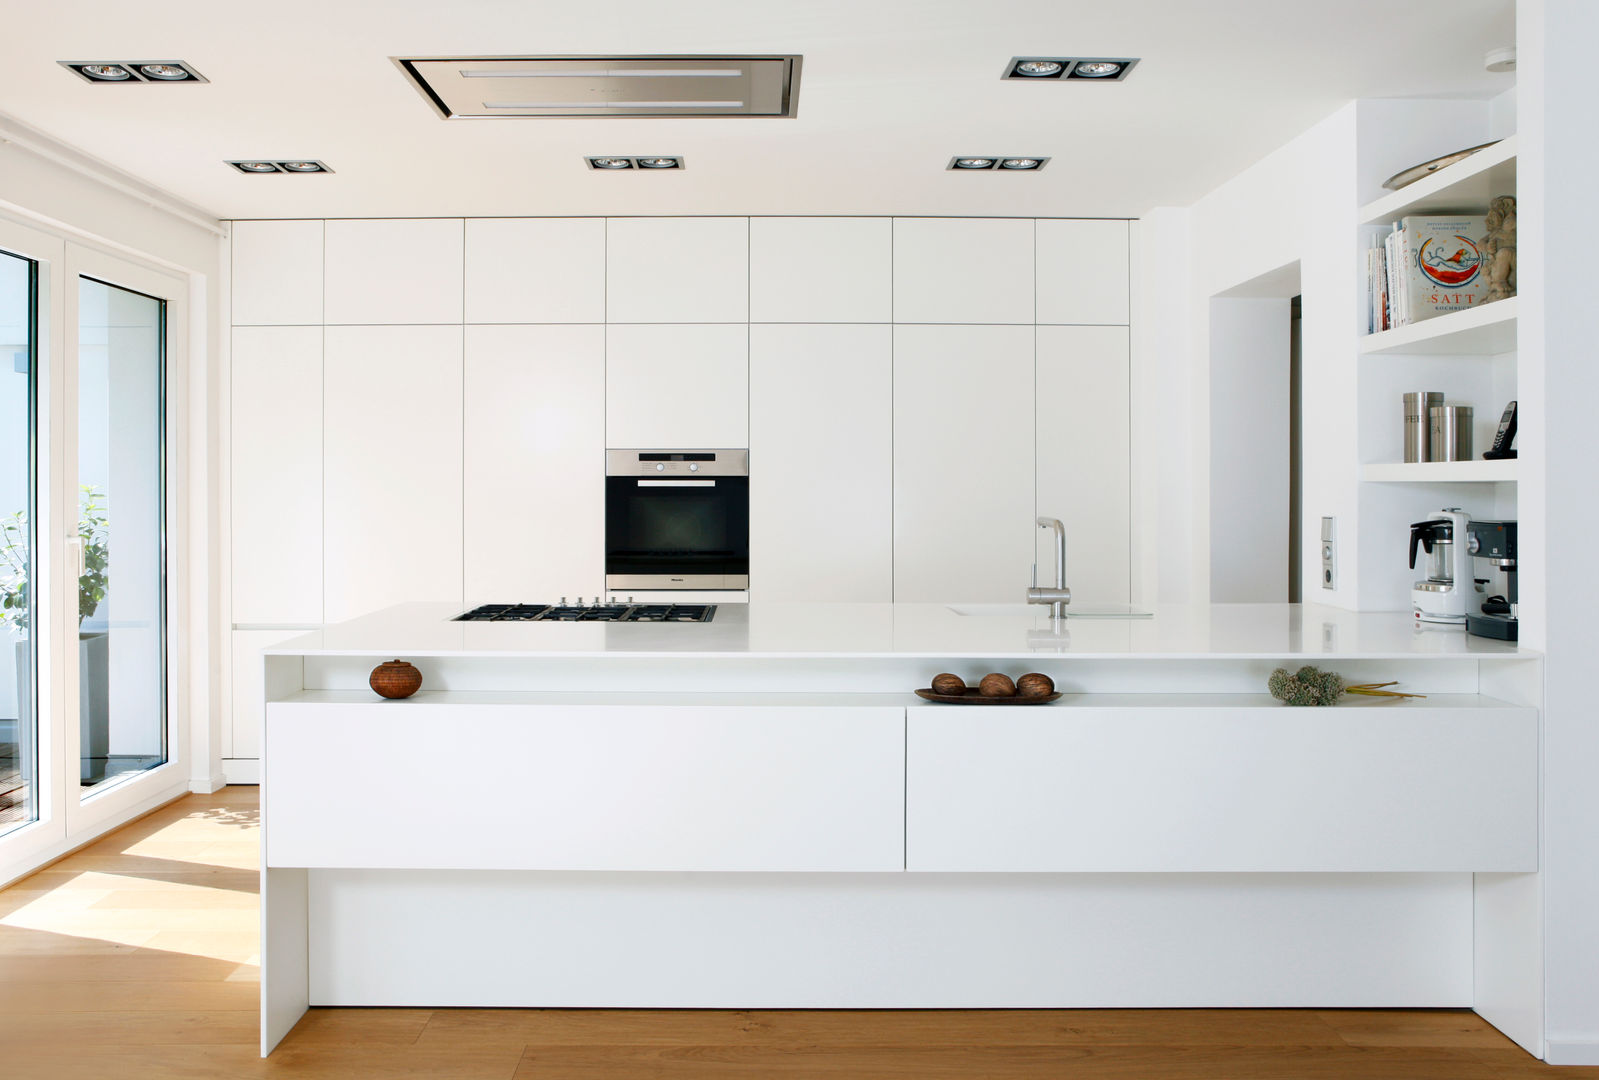 Küche R., rother küchenkonzepte + möbeldesign Gmbh rother küchenkonzepte + möbeldesign Gmbh Modern style kitchen